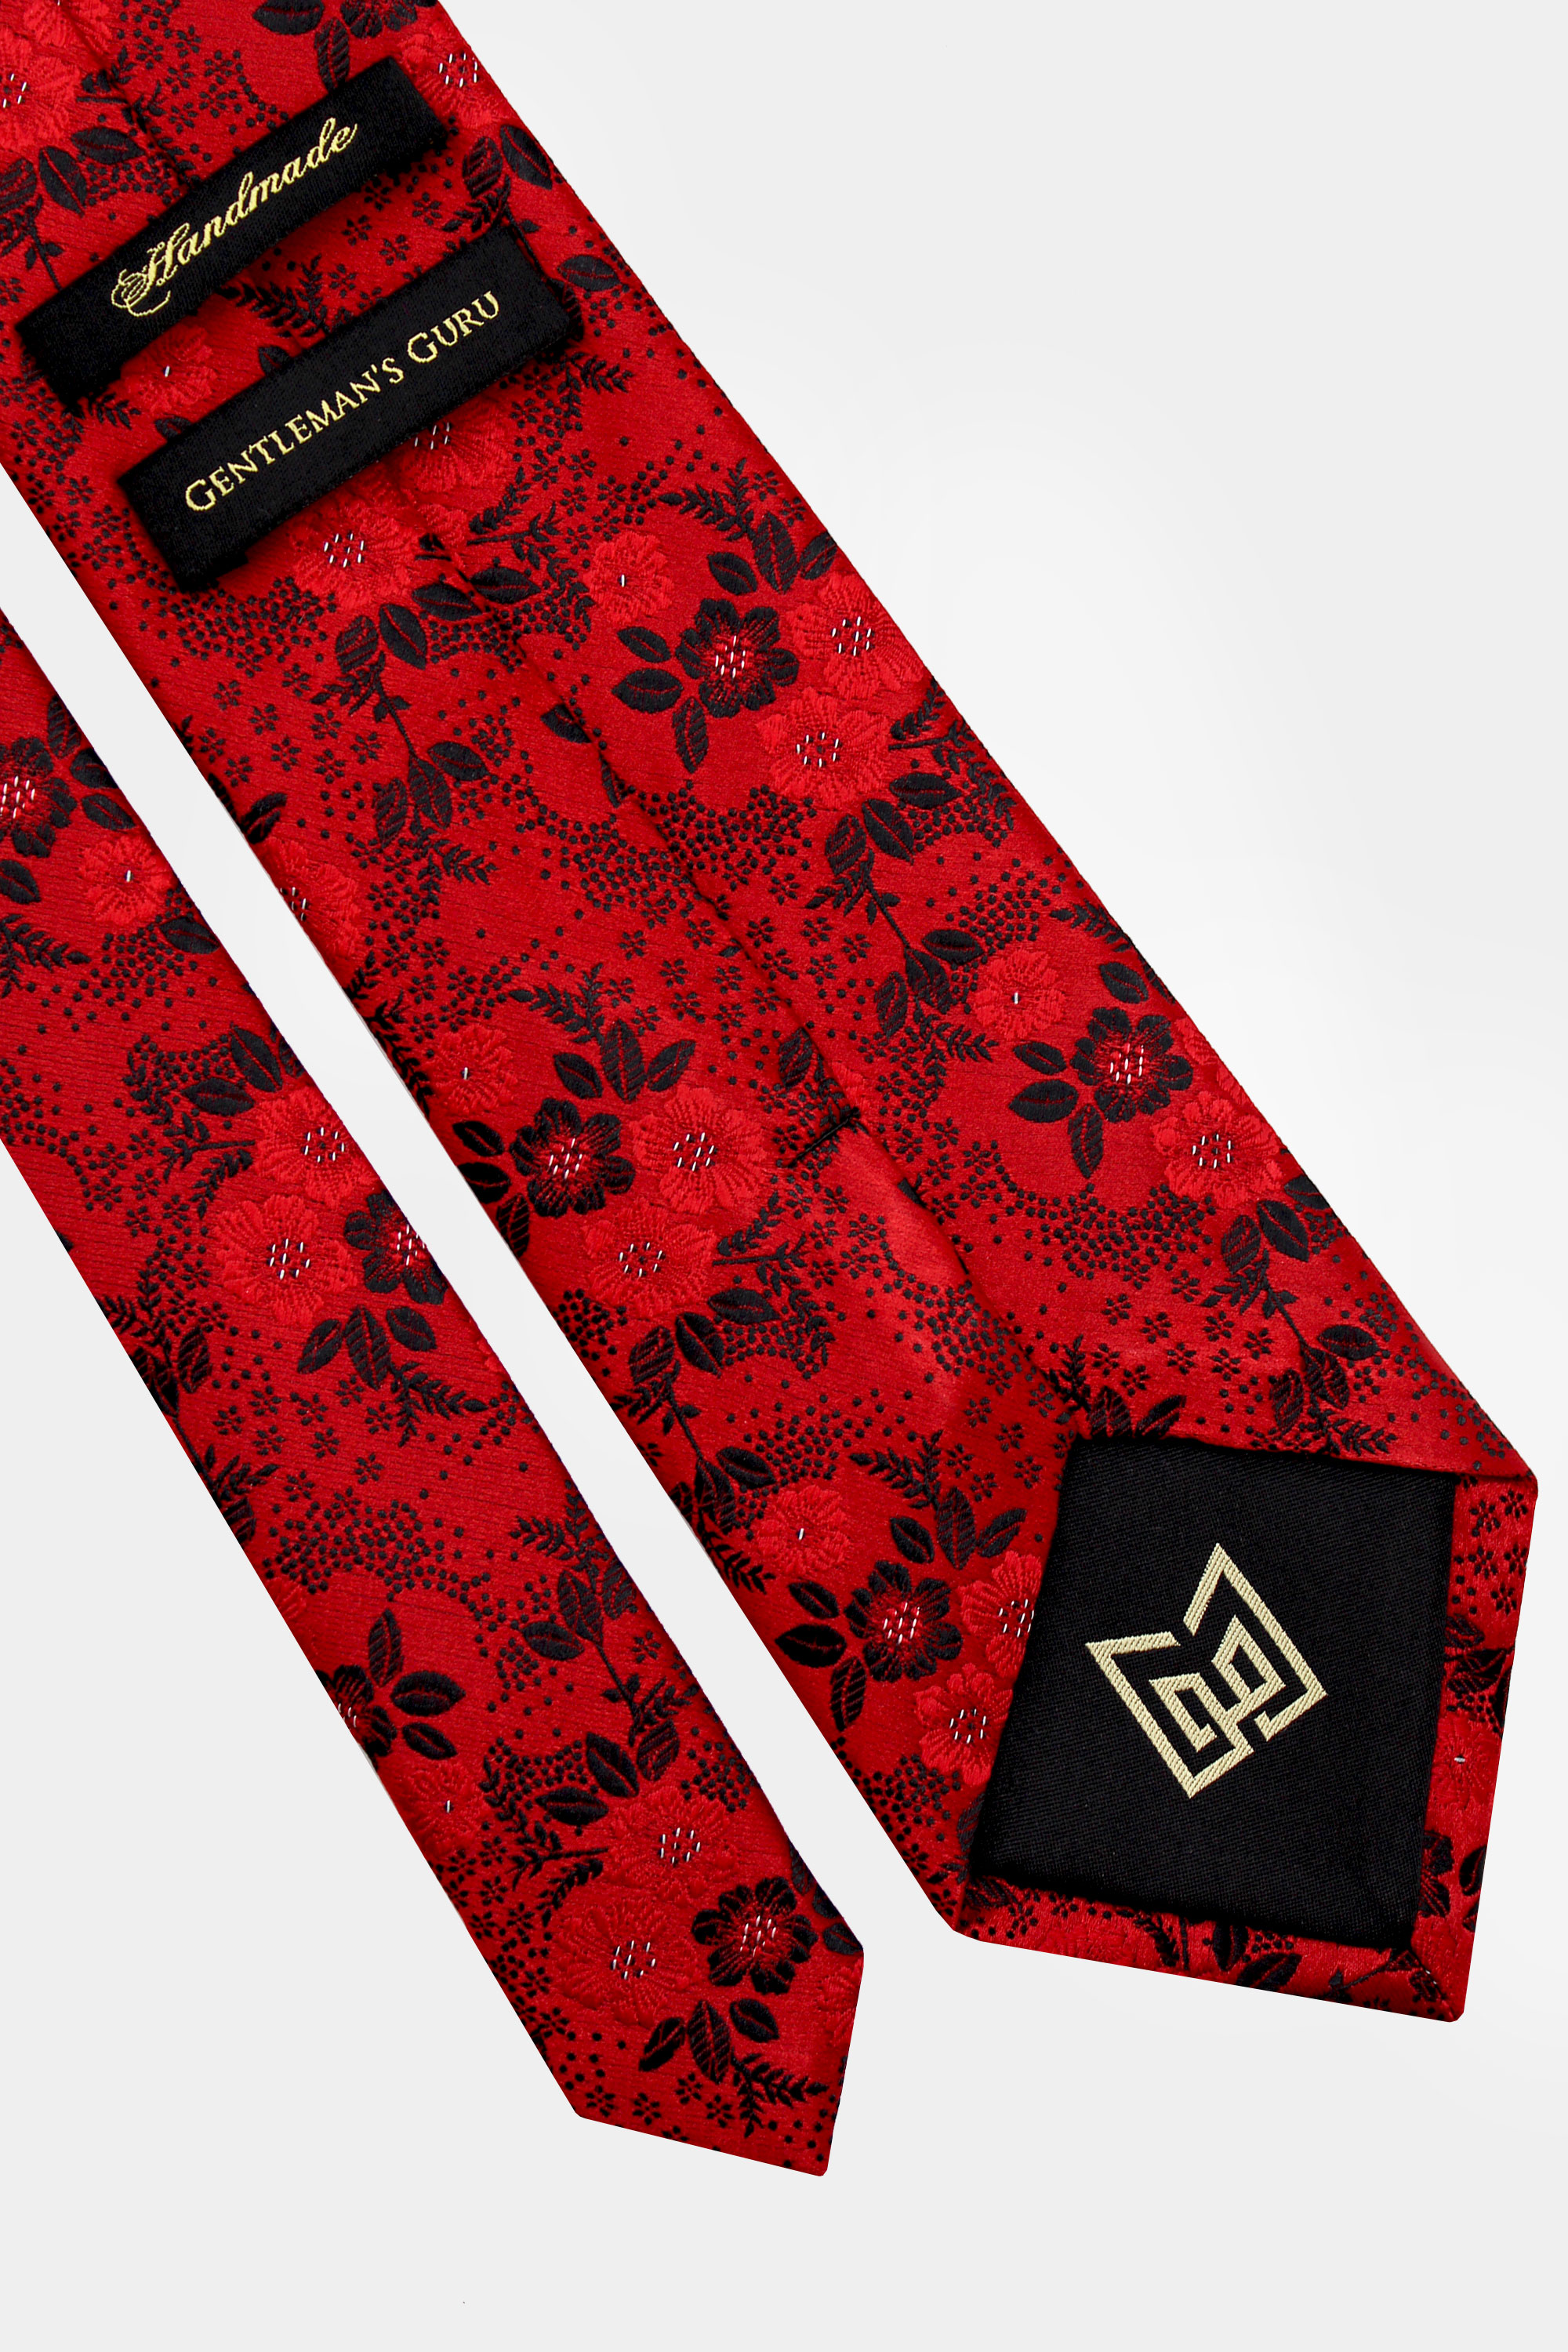 Red-Floral-Tie-from-Gentlemansguru.com